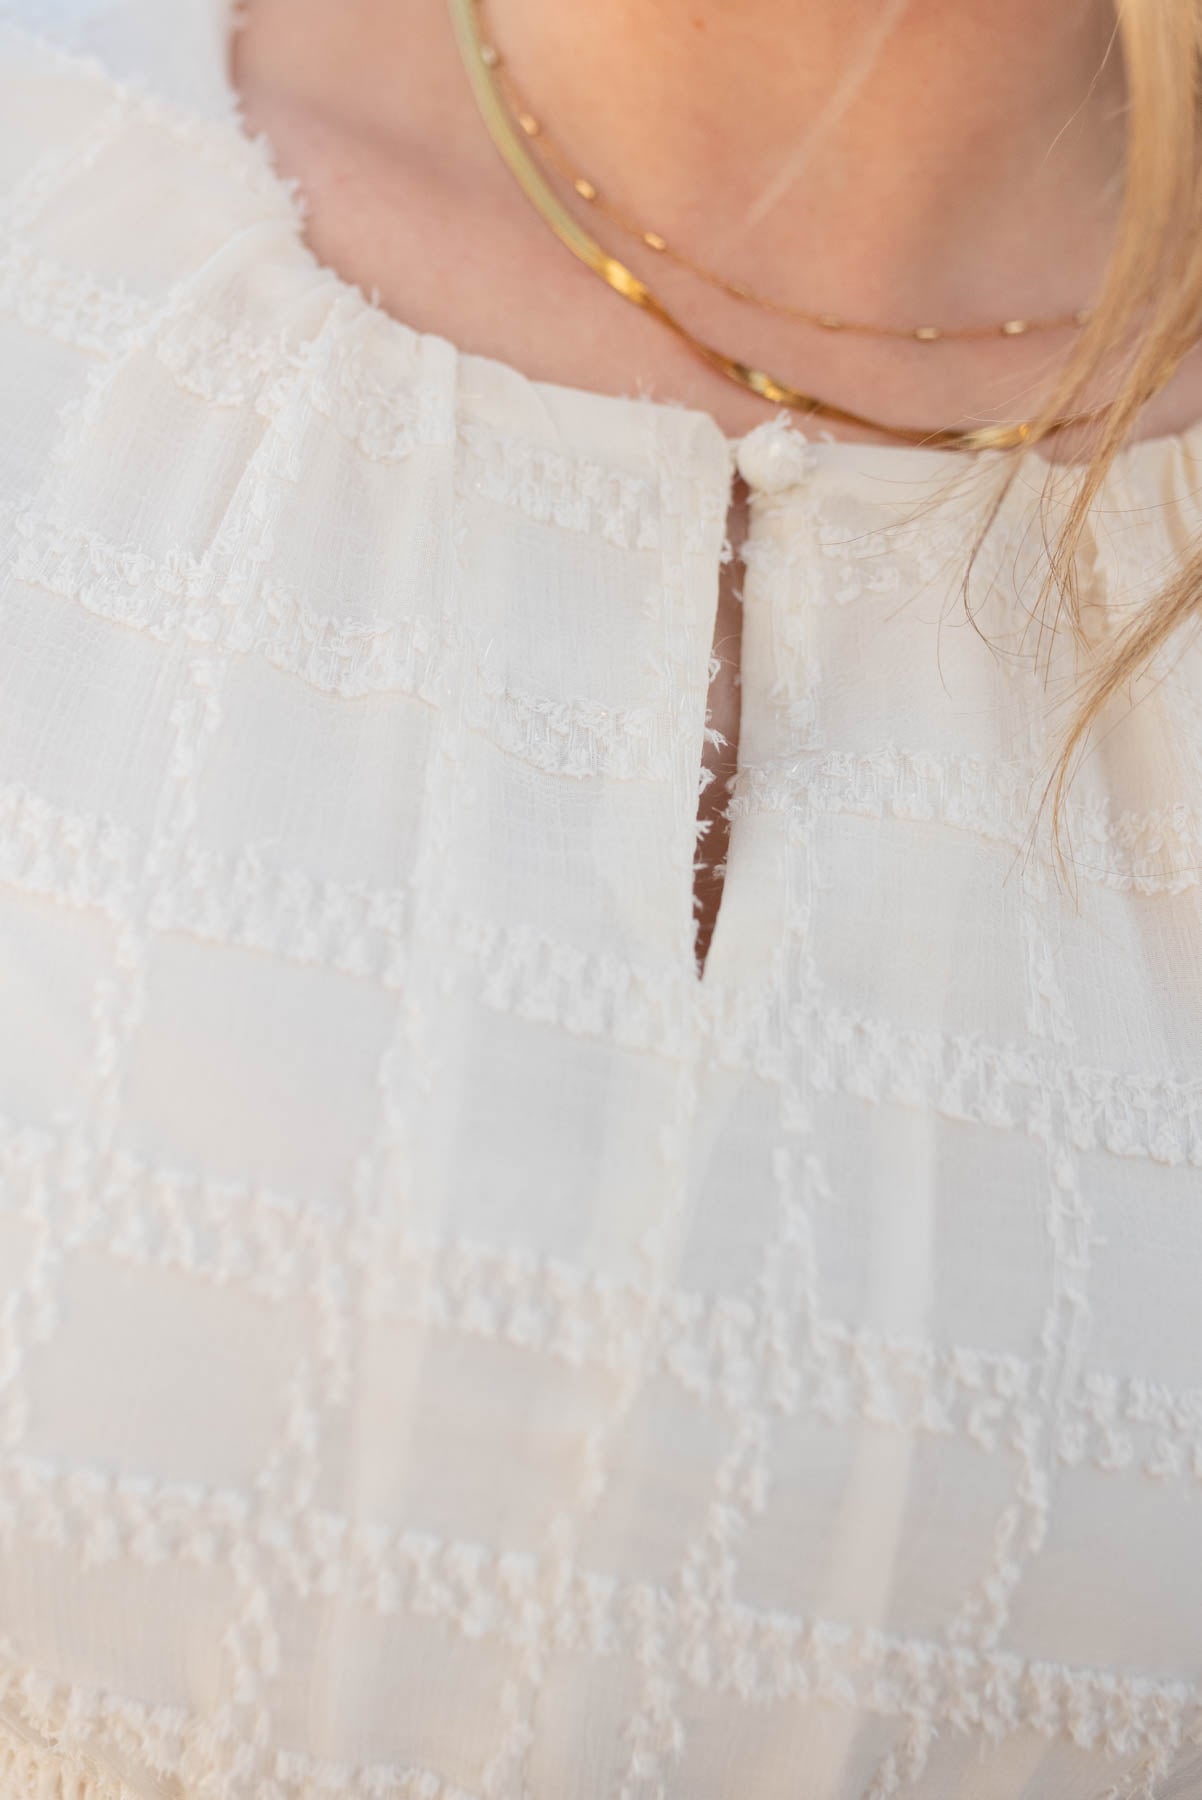 Neckline of a cream glitter maxi dress